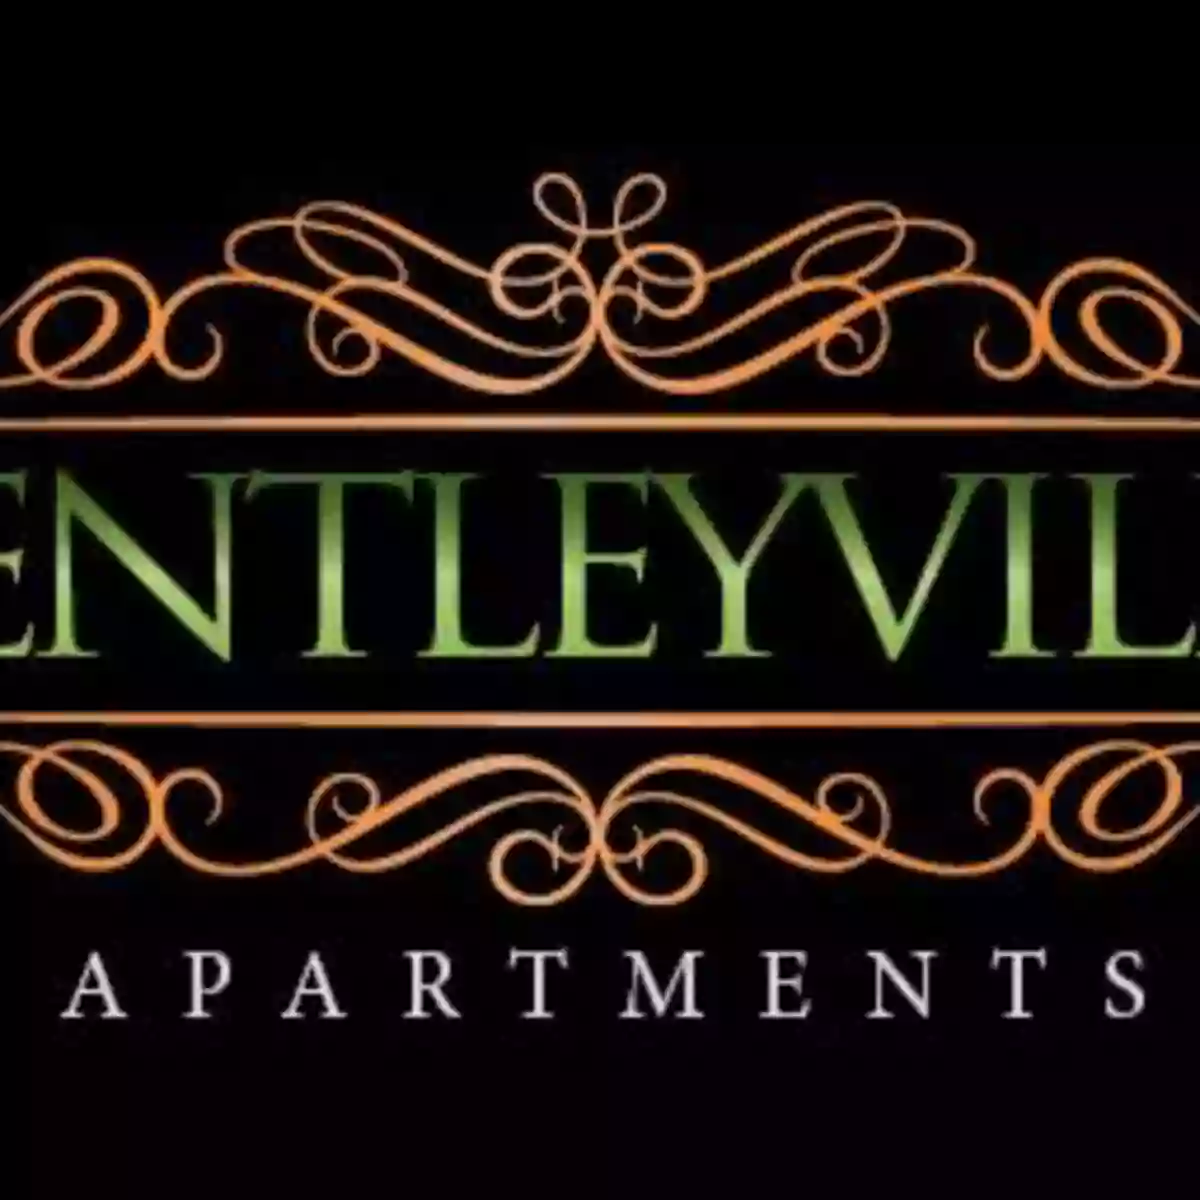 Bentleyville Apartments